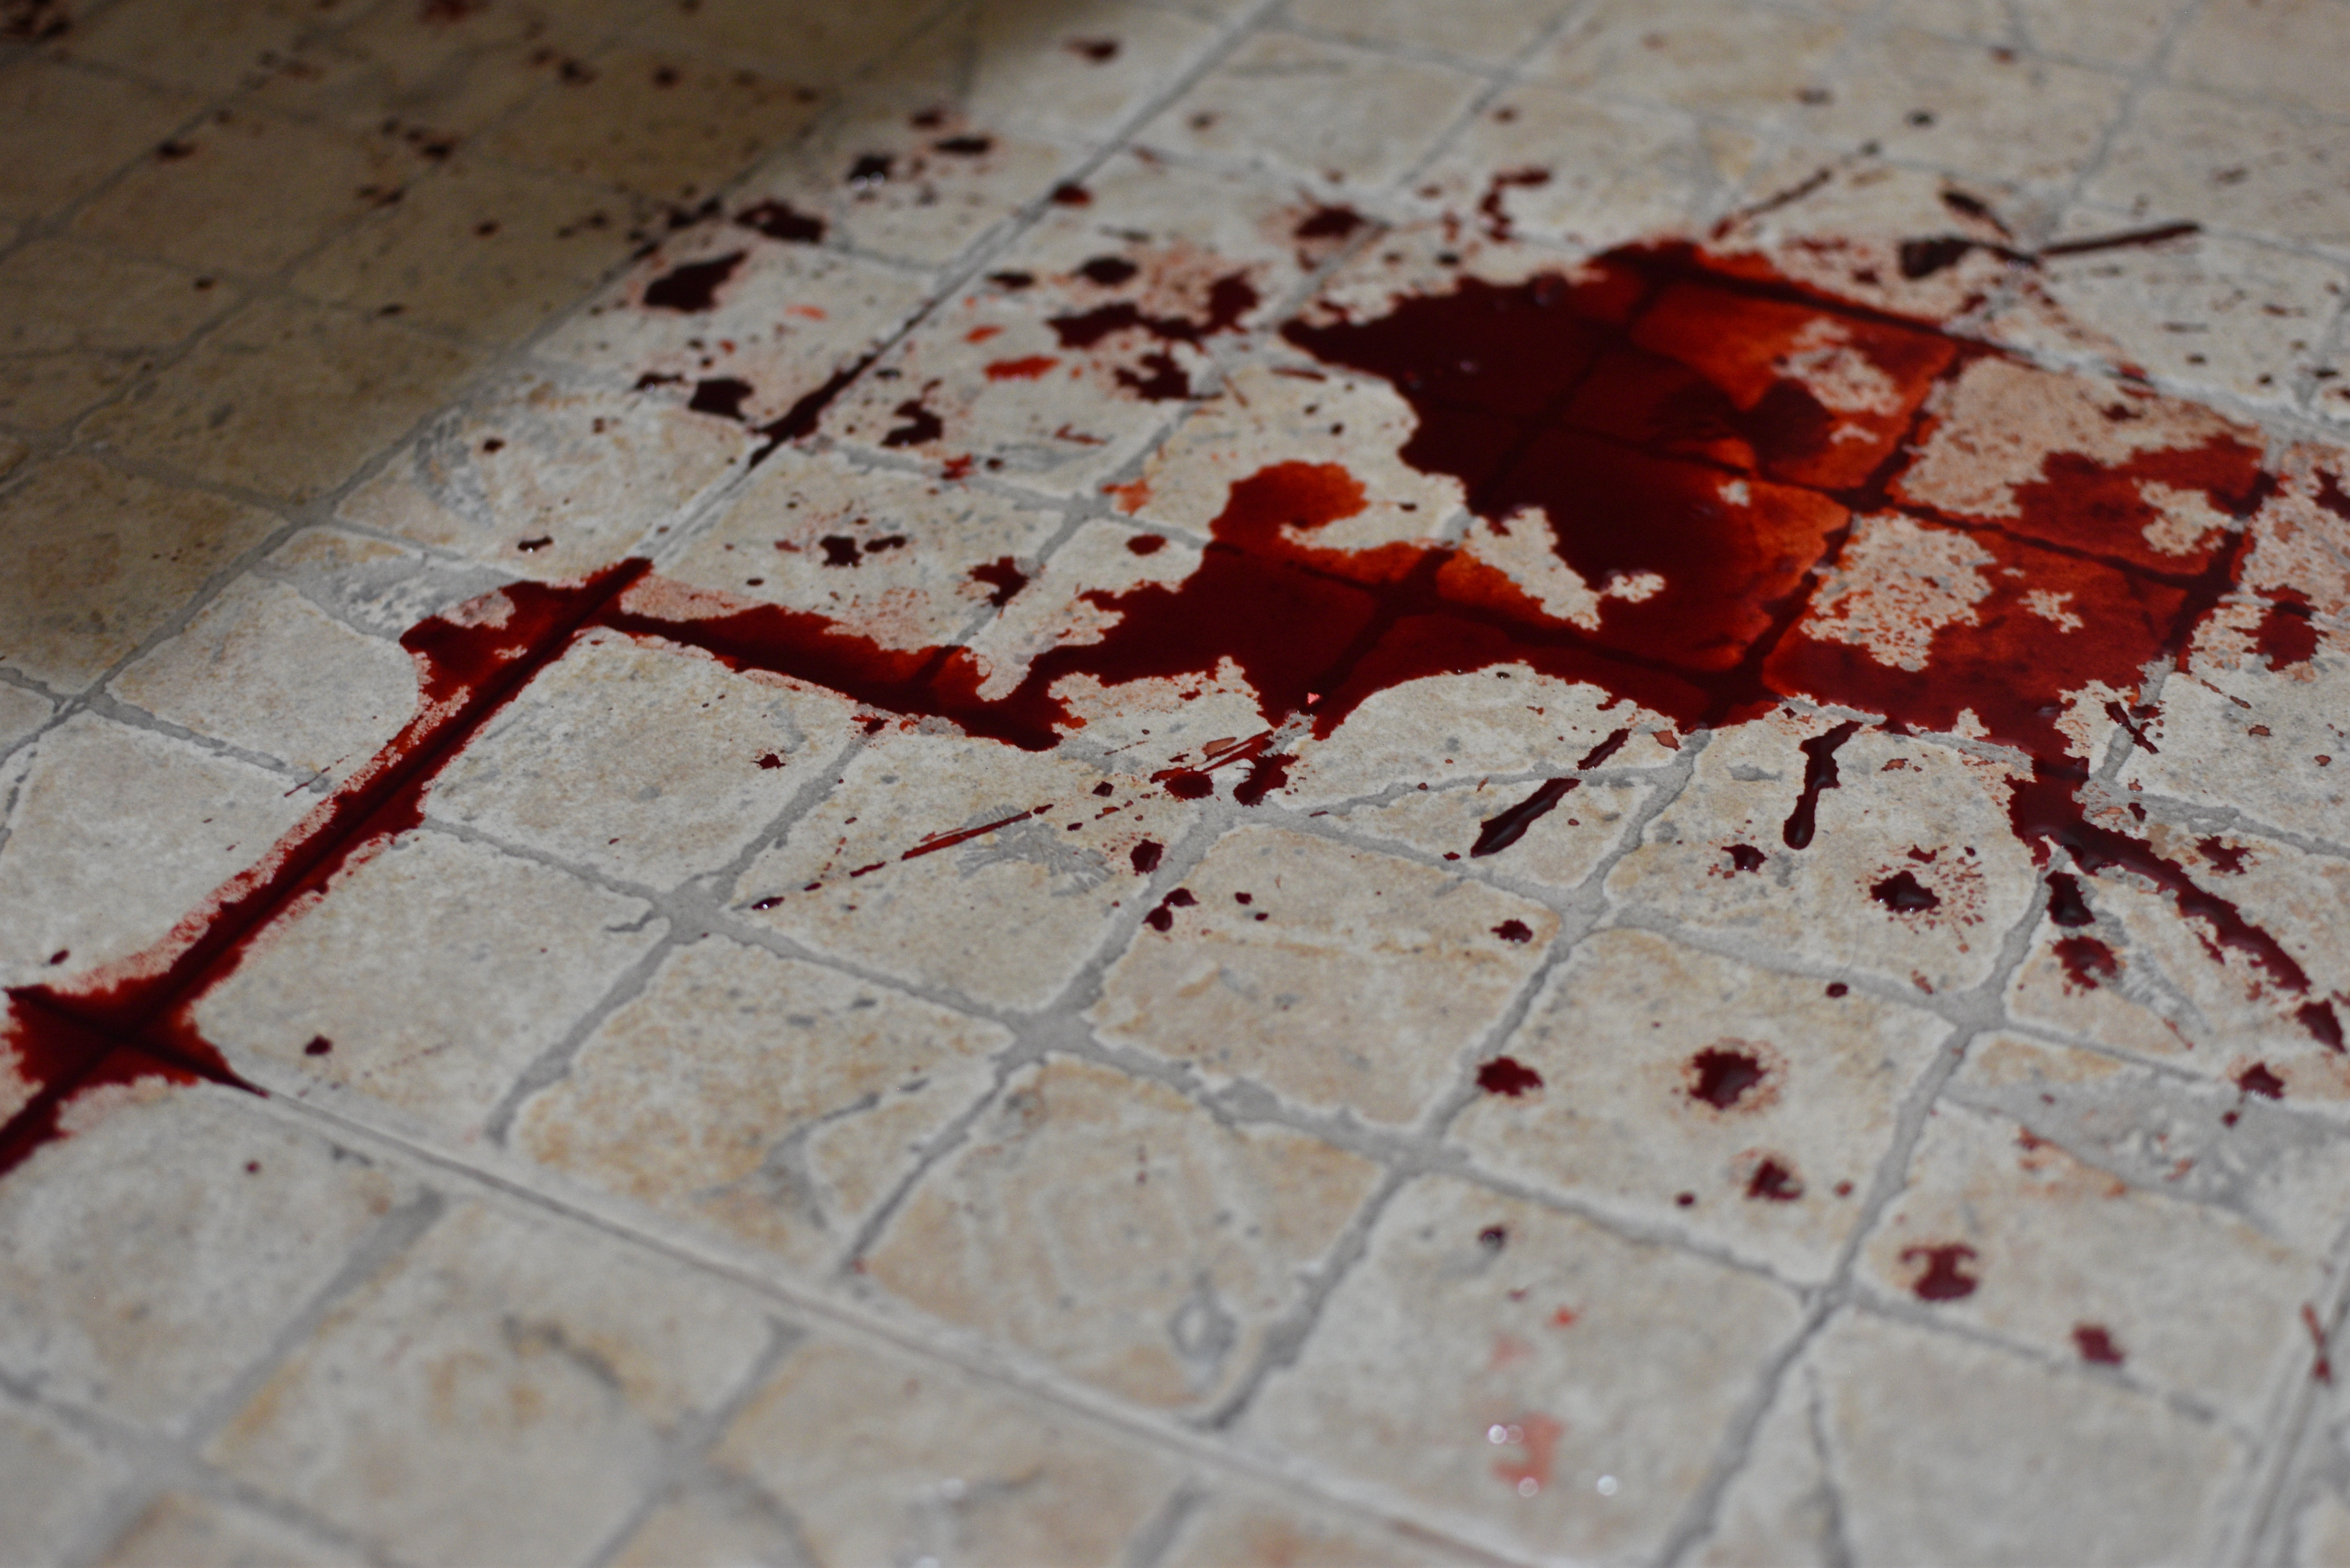 Sangre en el suelo | Fuente: Shutterstock